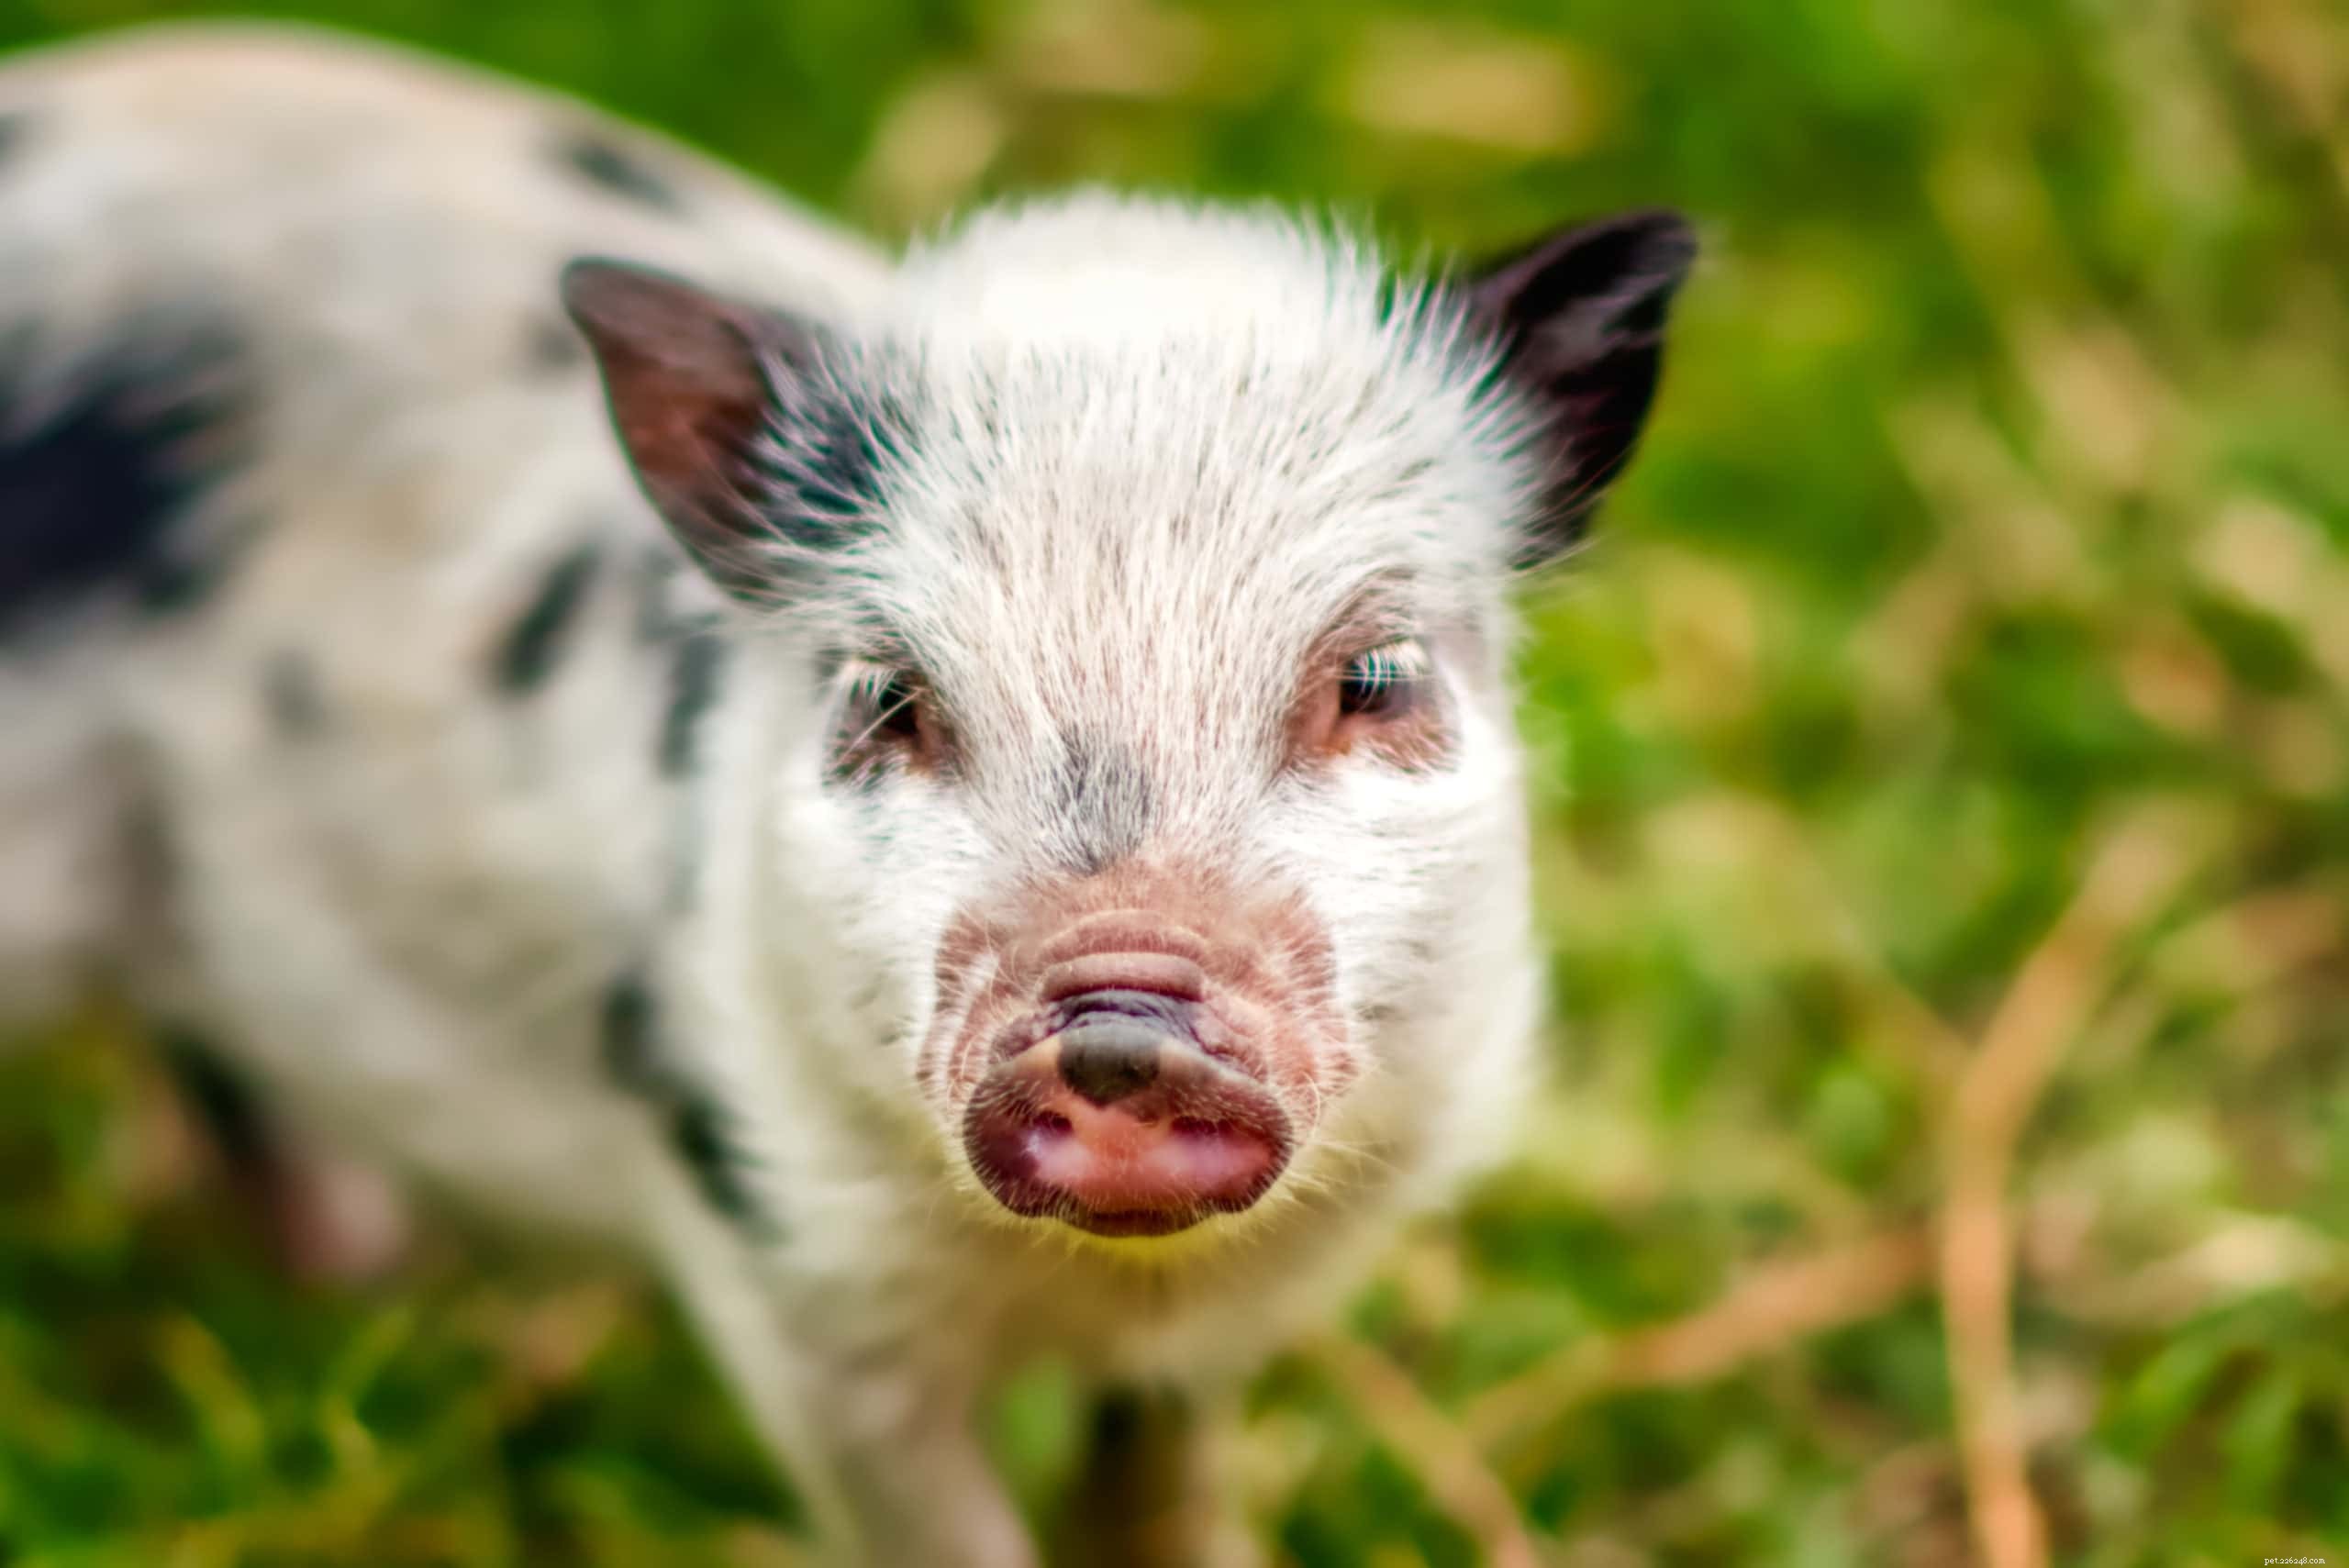 Как долго живут домашние мини-пиги? Данные и факты о средней продолжительности жизни чайной свиньи